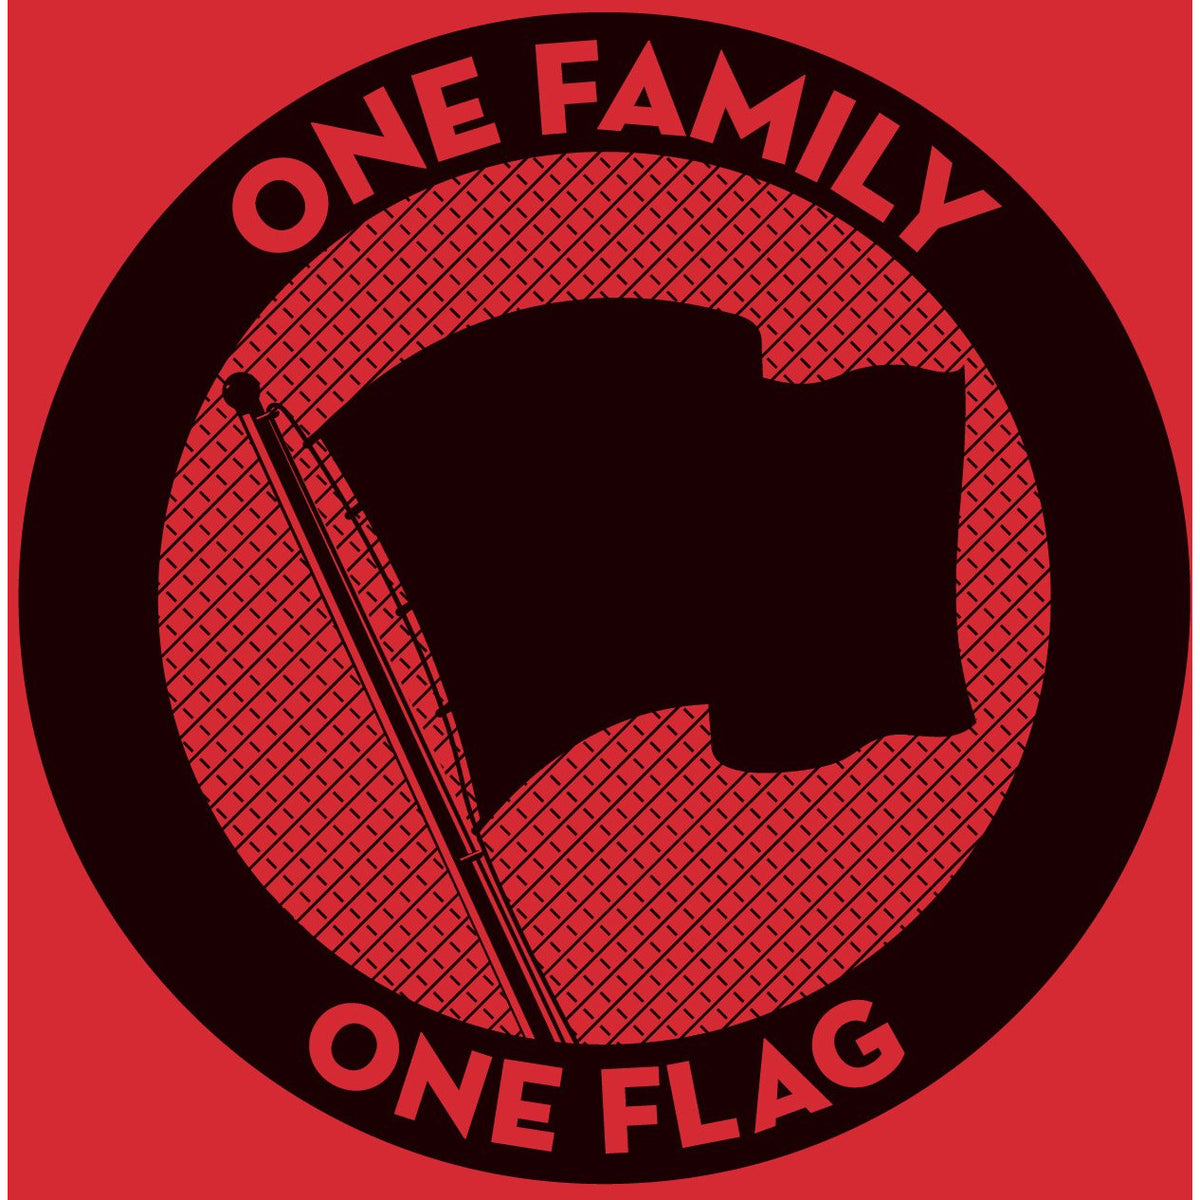 One Family, One Flag - Black Vinyl 3xLP